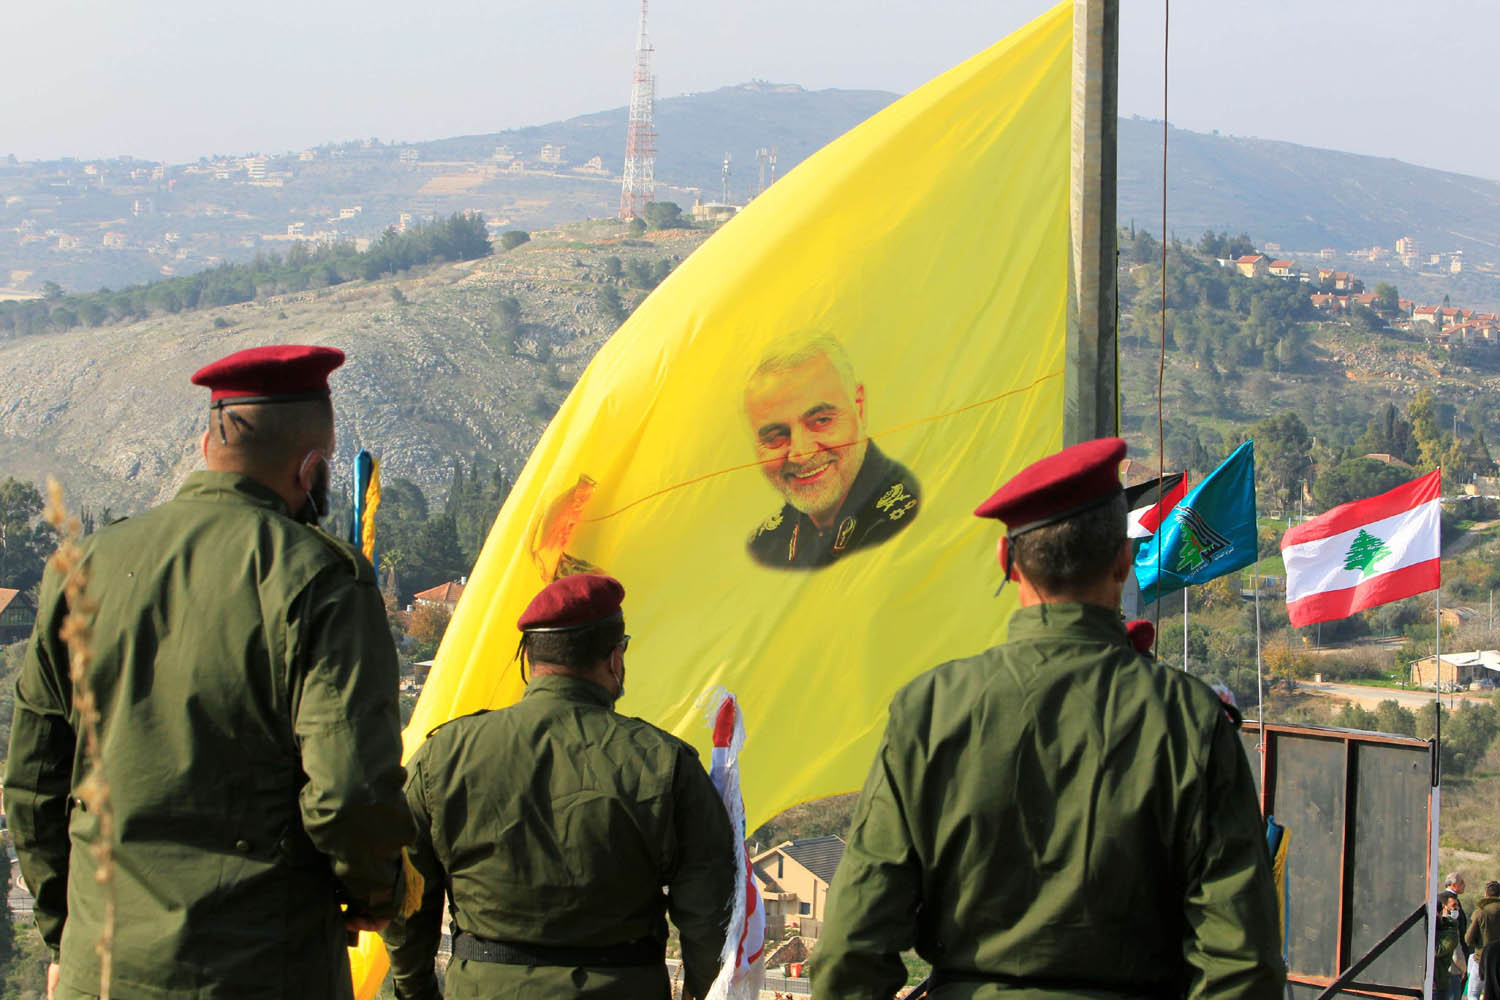 مقاتلون من حزب الله يرفعون صورا لقاسم سليماني على اعلام الحزب بالقرب من الحدود اللبنانية الاسرائيلية